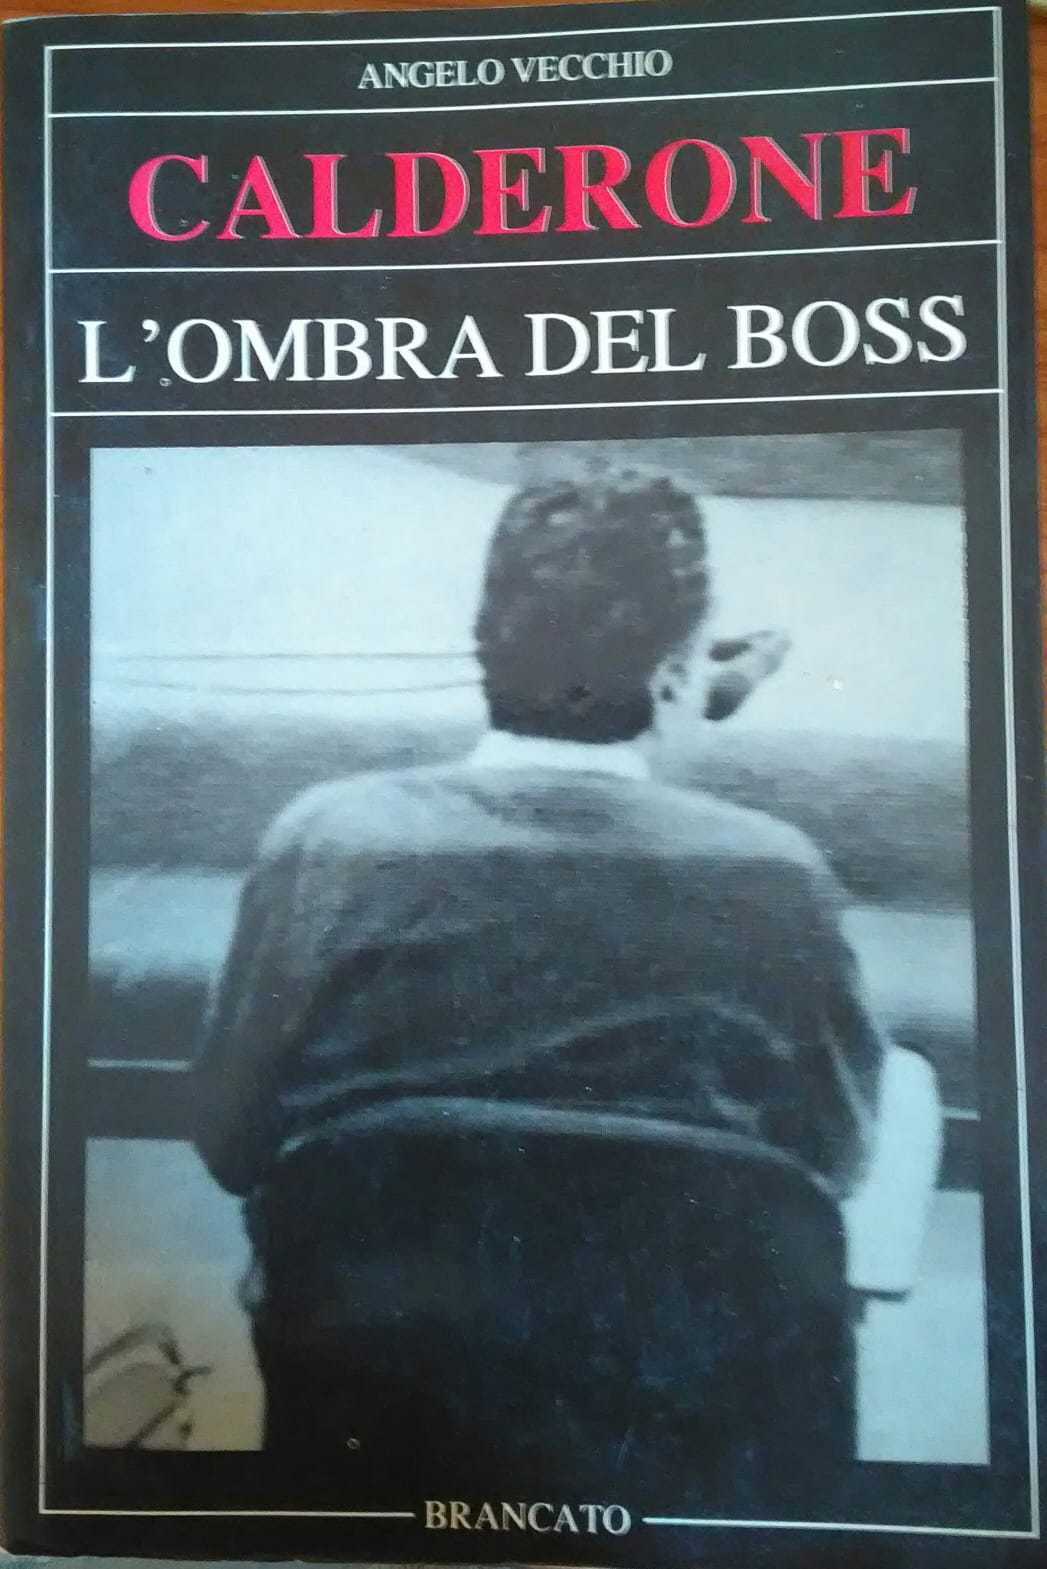 Calderone l' ombra del boss- Angelo Vecchio,1989, Brancato - S libro usato